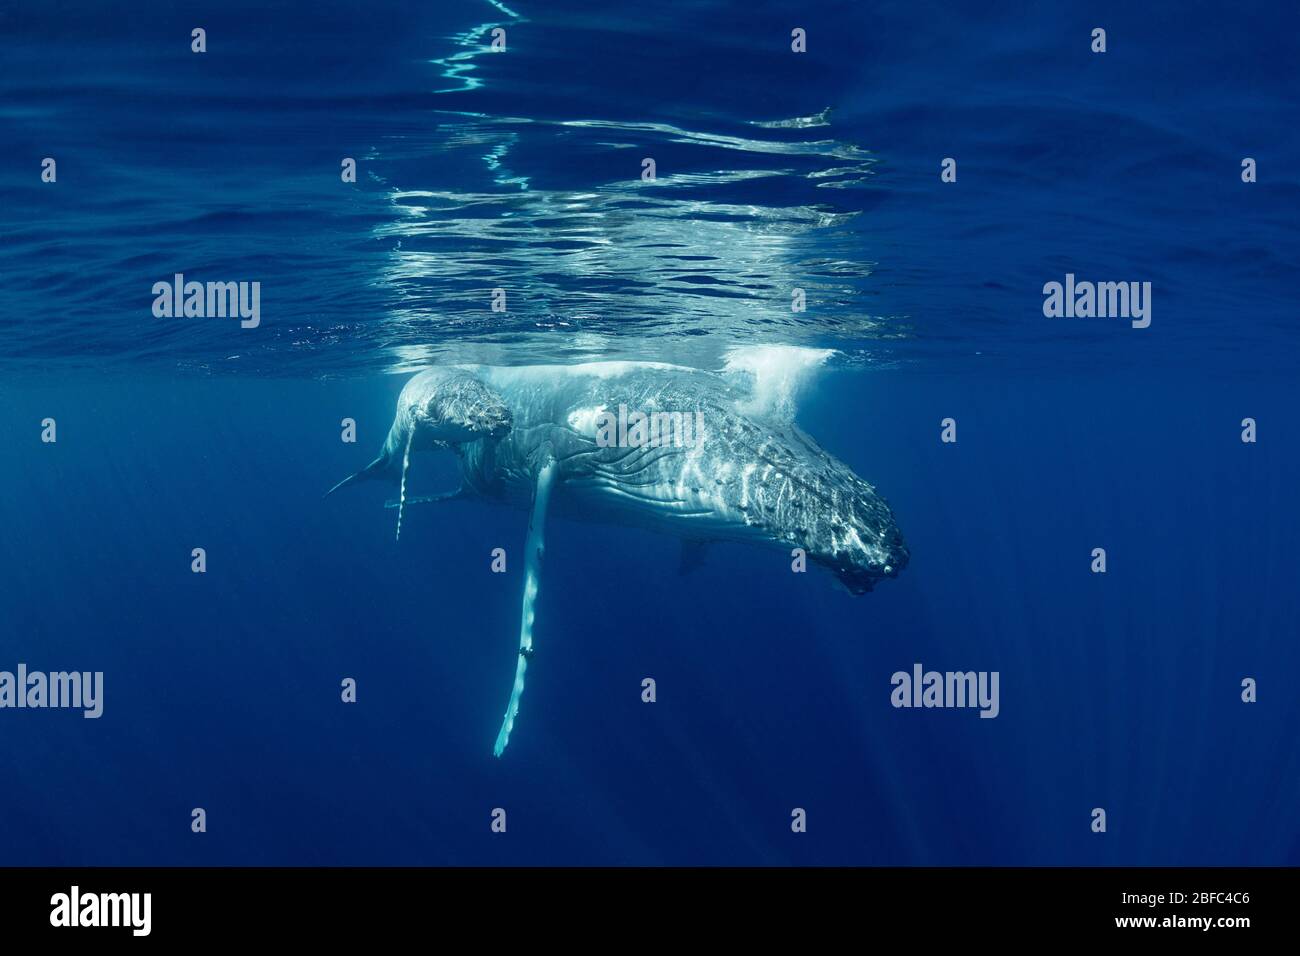 Madre de ballena jorobada y pequeño becerro, Megaptera novaeangliae, descansando justo debajo de la superficie, cerca de la isla de Nomuka, grupo de ha'apai, Reino de Tonga Foto de stock